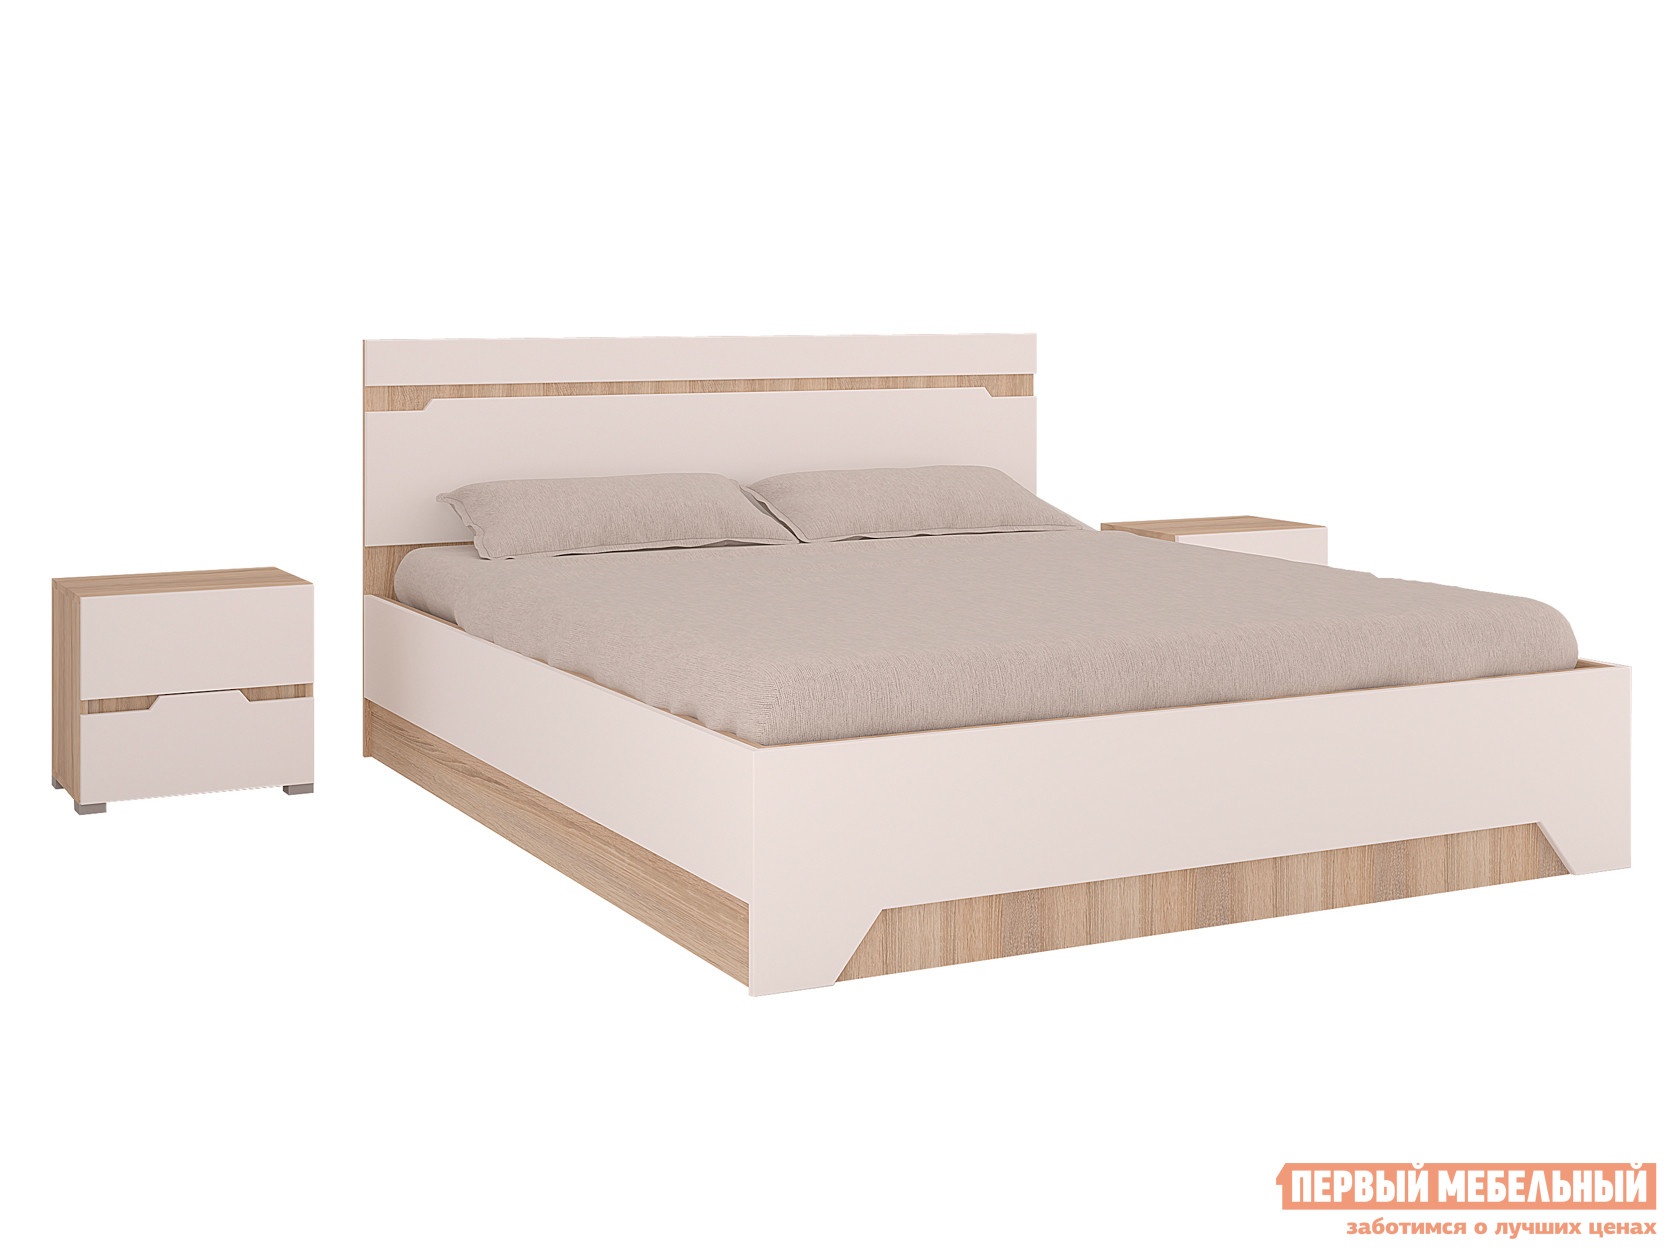 Двуспальная кровать спальня анталия дуб сонома белый софт, с подъемным механизмом preview 1